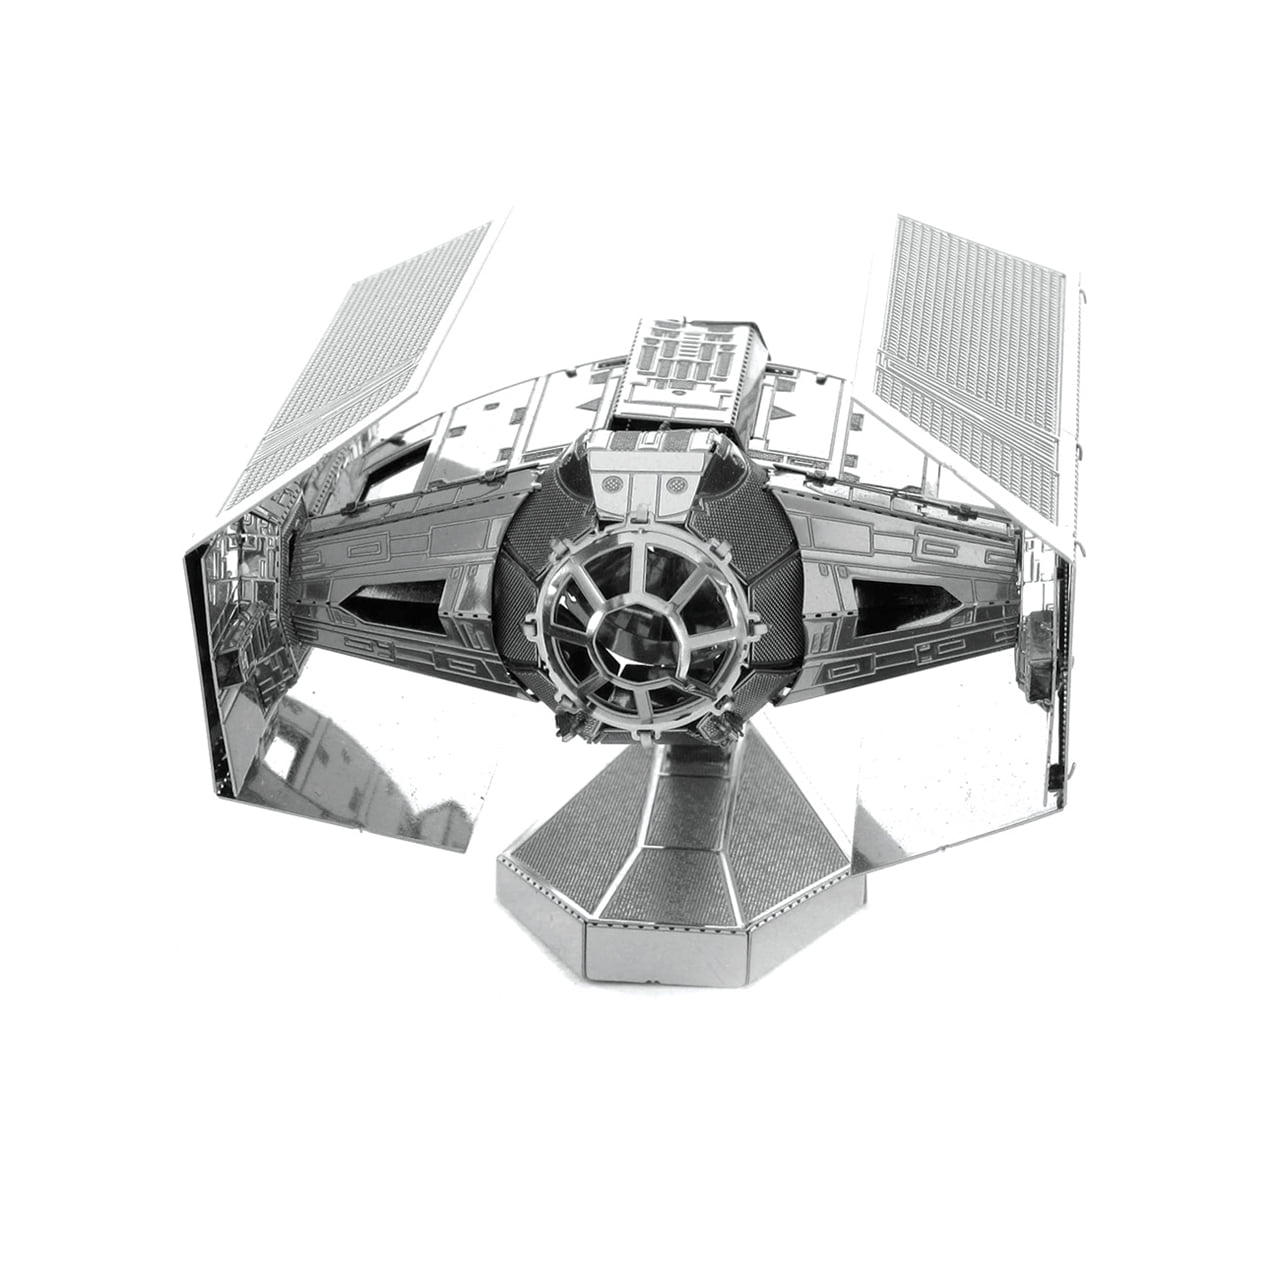 Metal Earth Star Wars Laser Cut 3D Model Kit TIE FIGHTER 